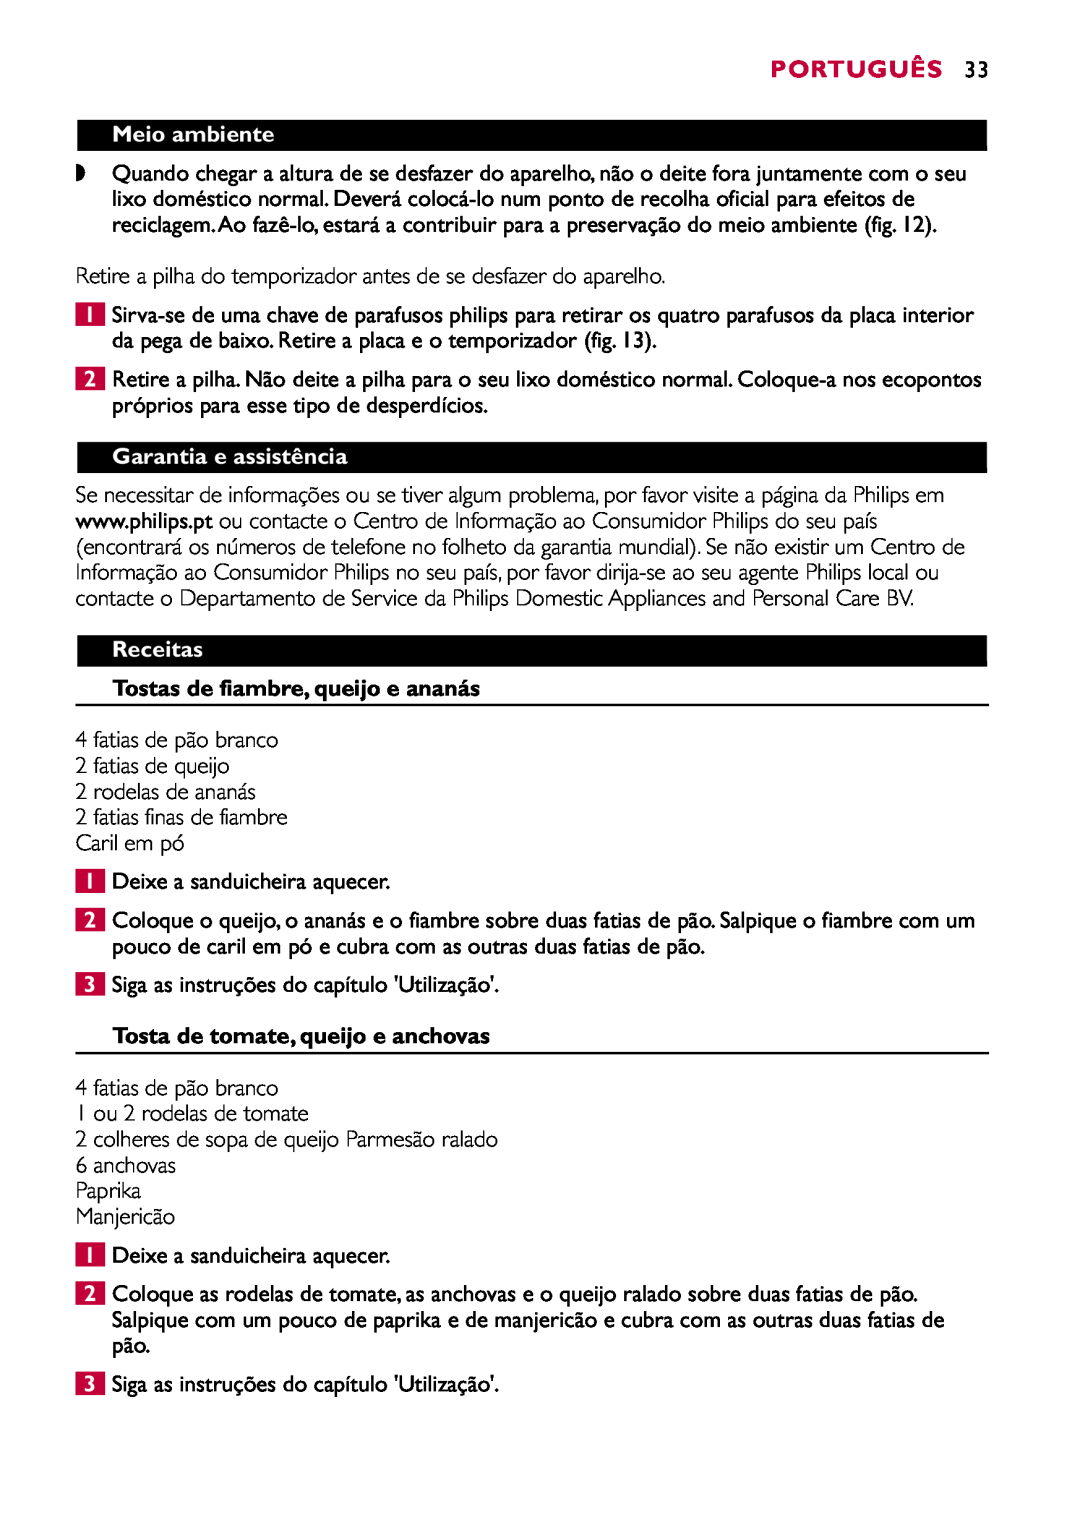 Philips HD2415 manual Meio ambiente, Garantia e assistência, Receitas, Tostas de fiambre, queijo e ananás, Português 